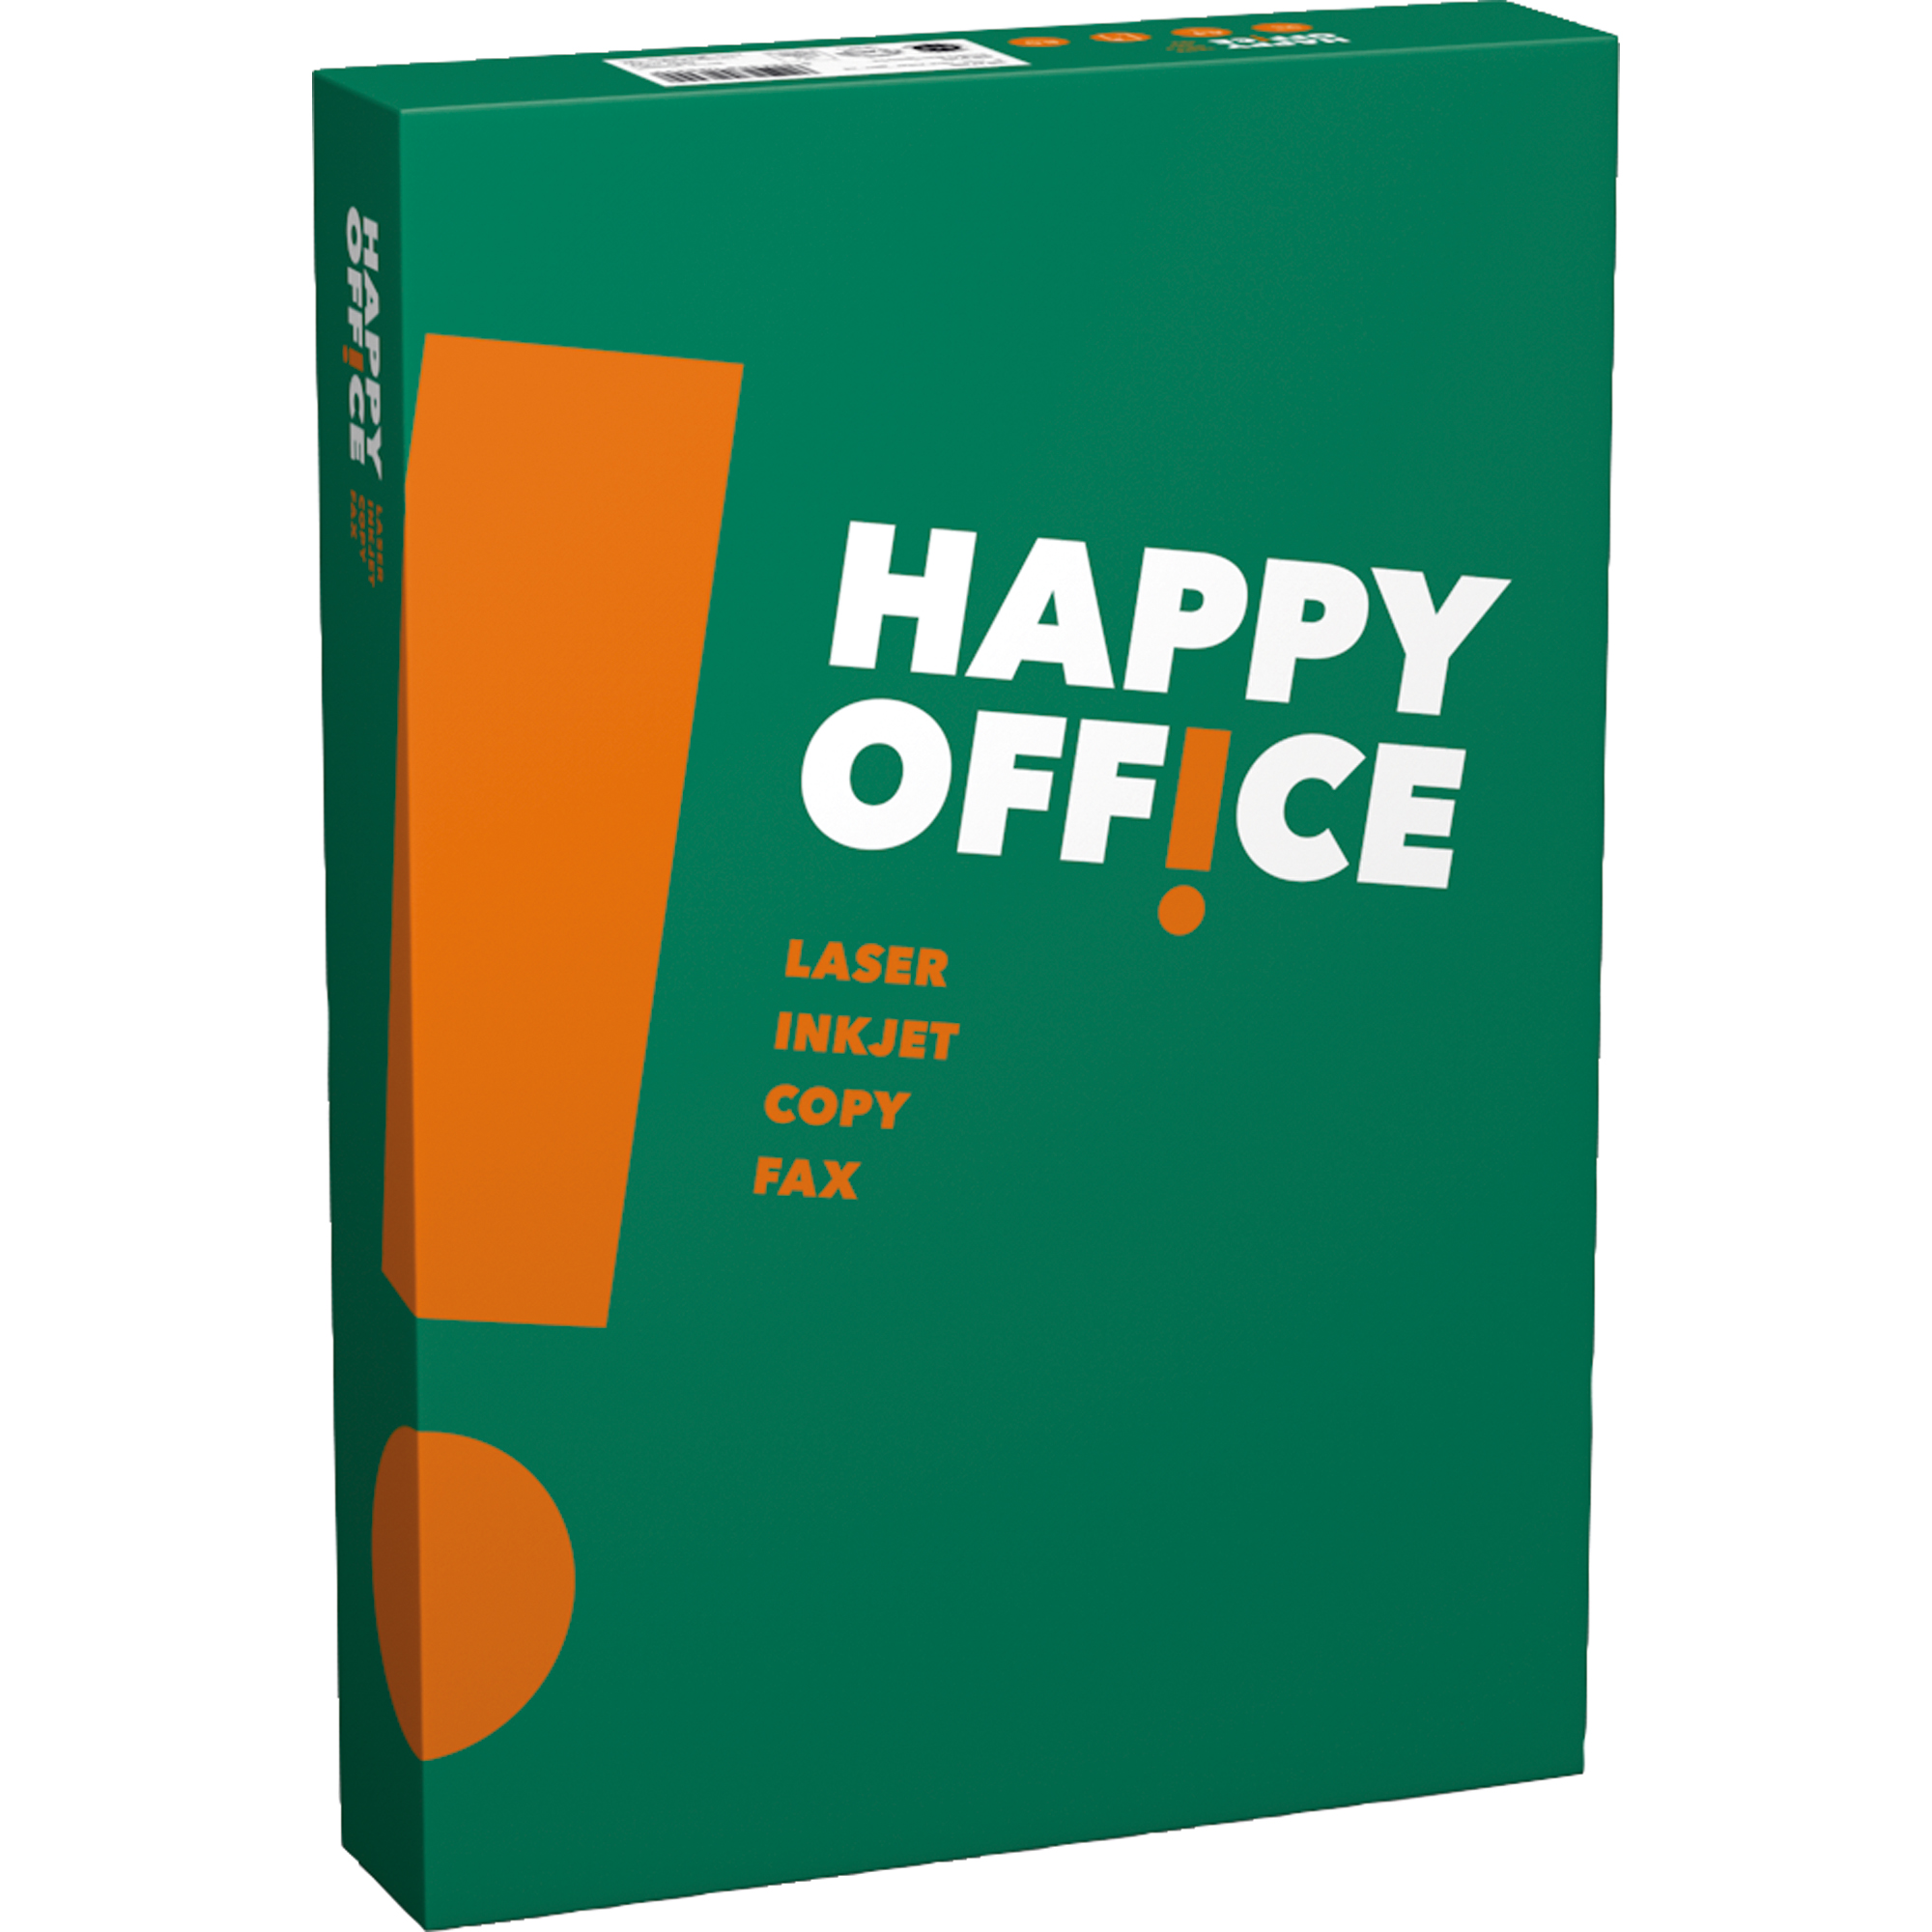 1 hf Office ws IGEPA A3 A3 500 80g Happy Bl./Pack. Kopierpapier 809B80B Packung Kopierpapier